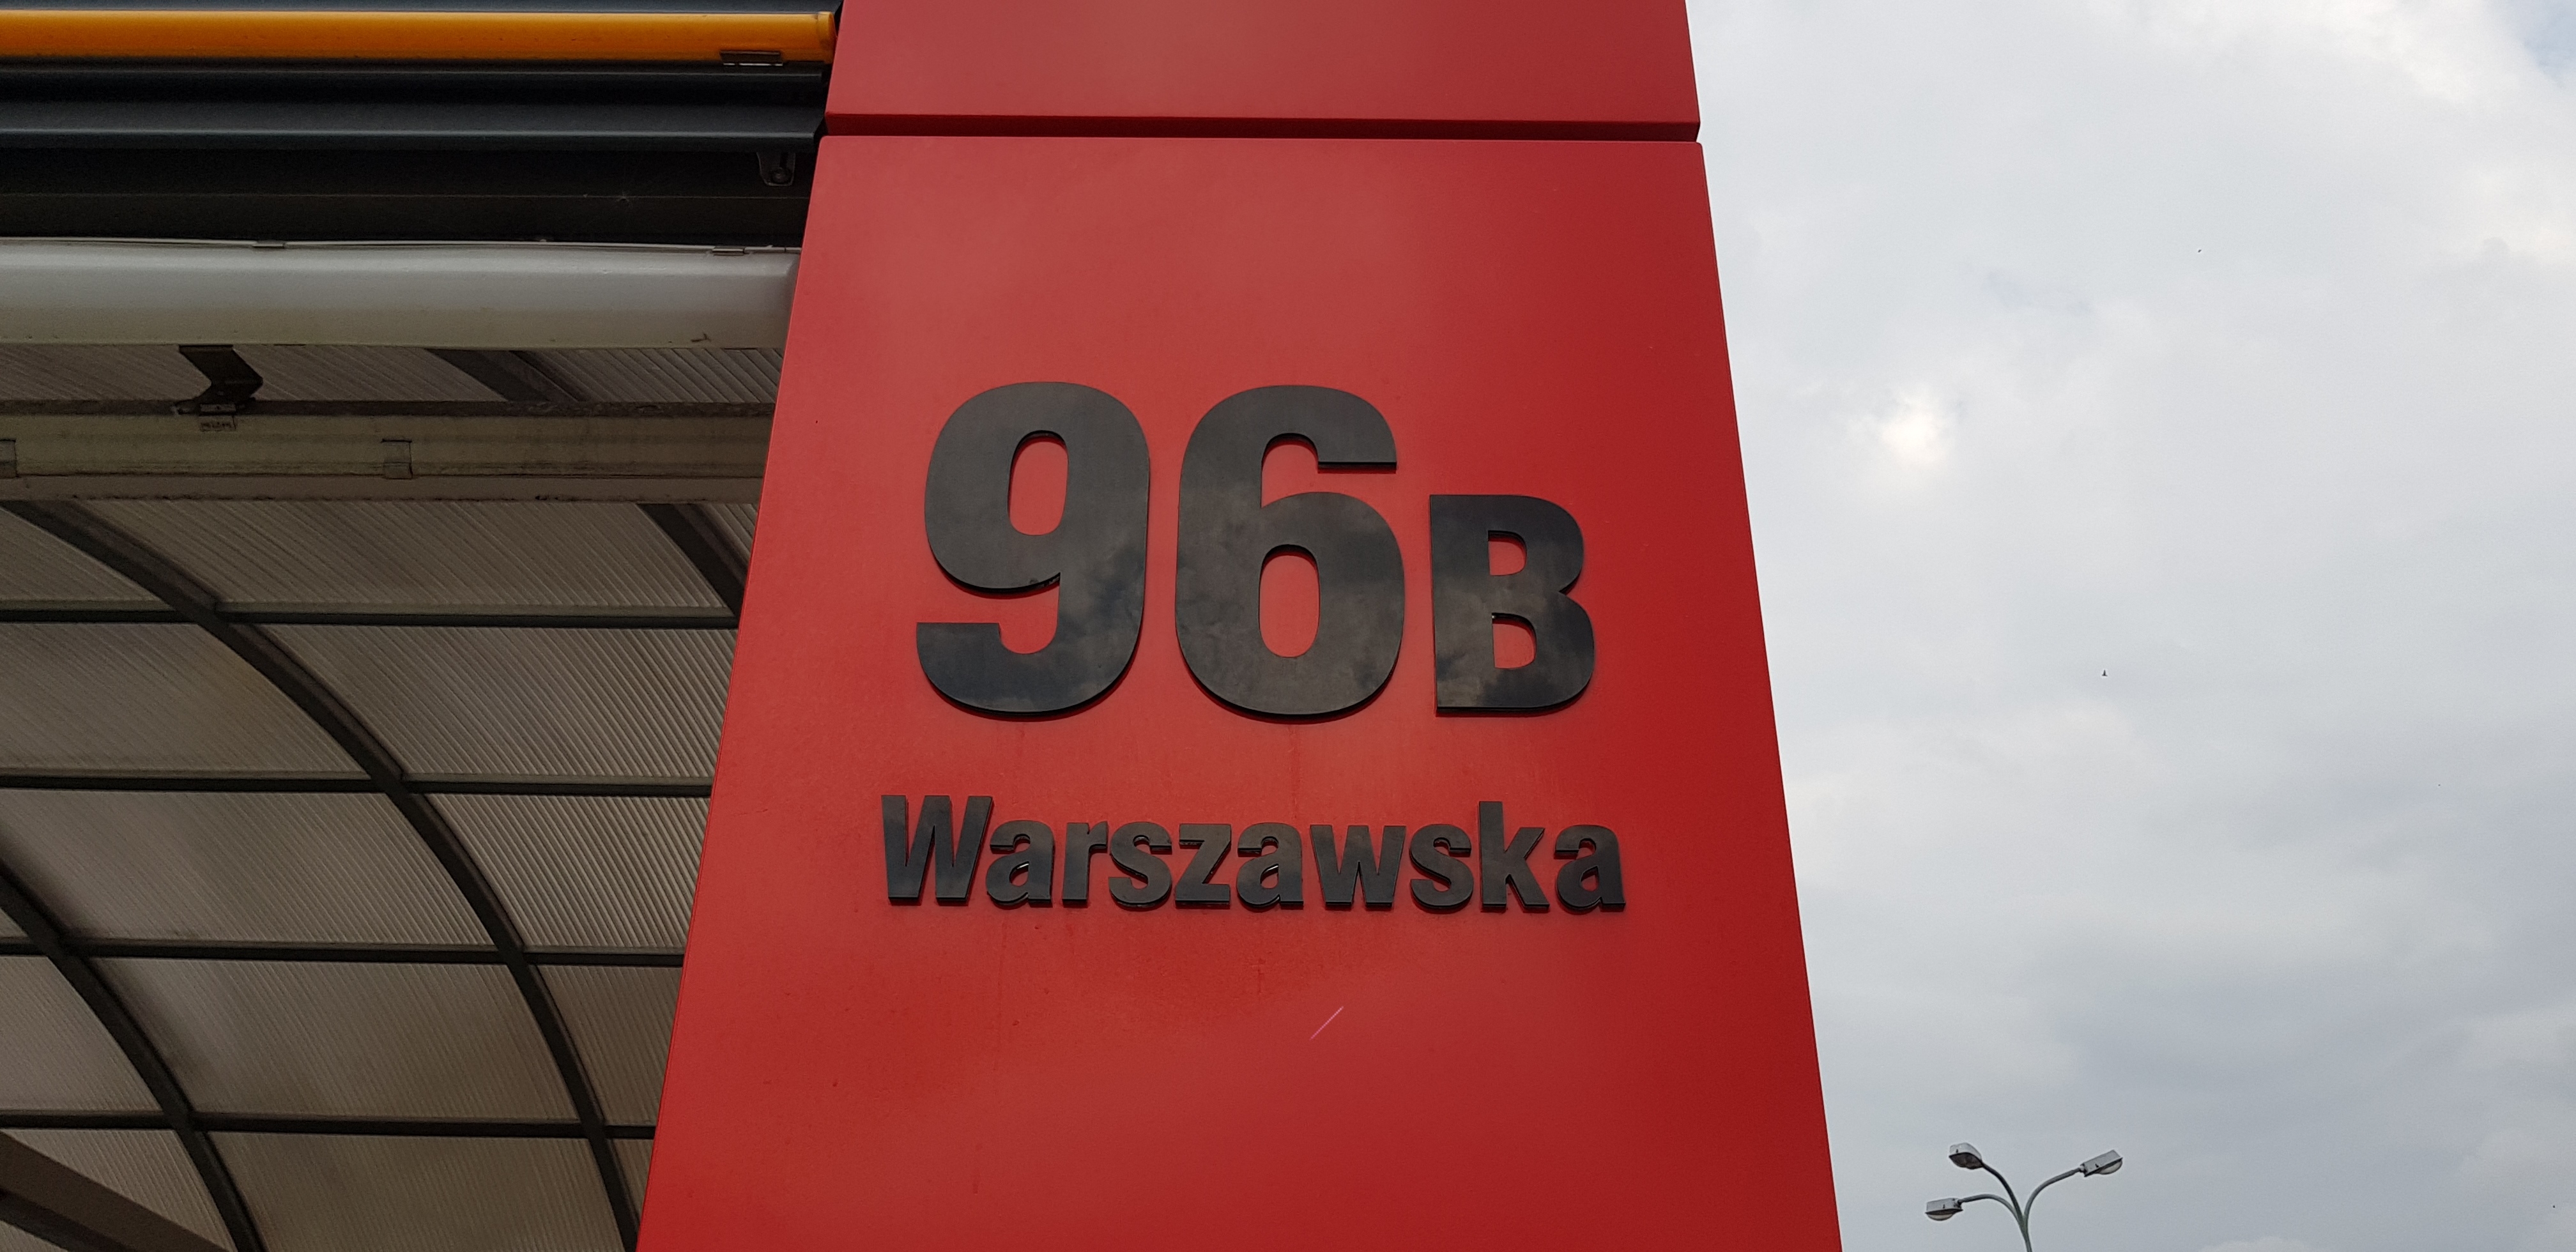 WARSZAWSKA 96B